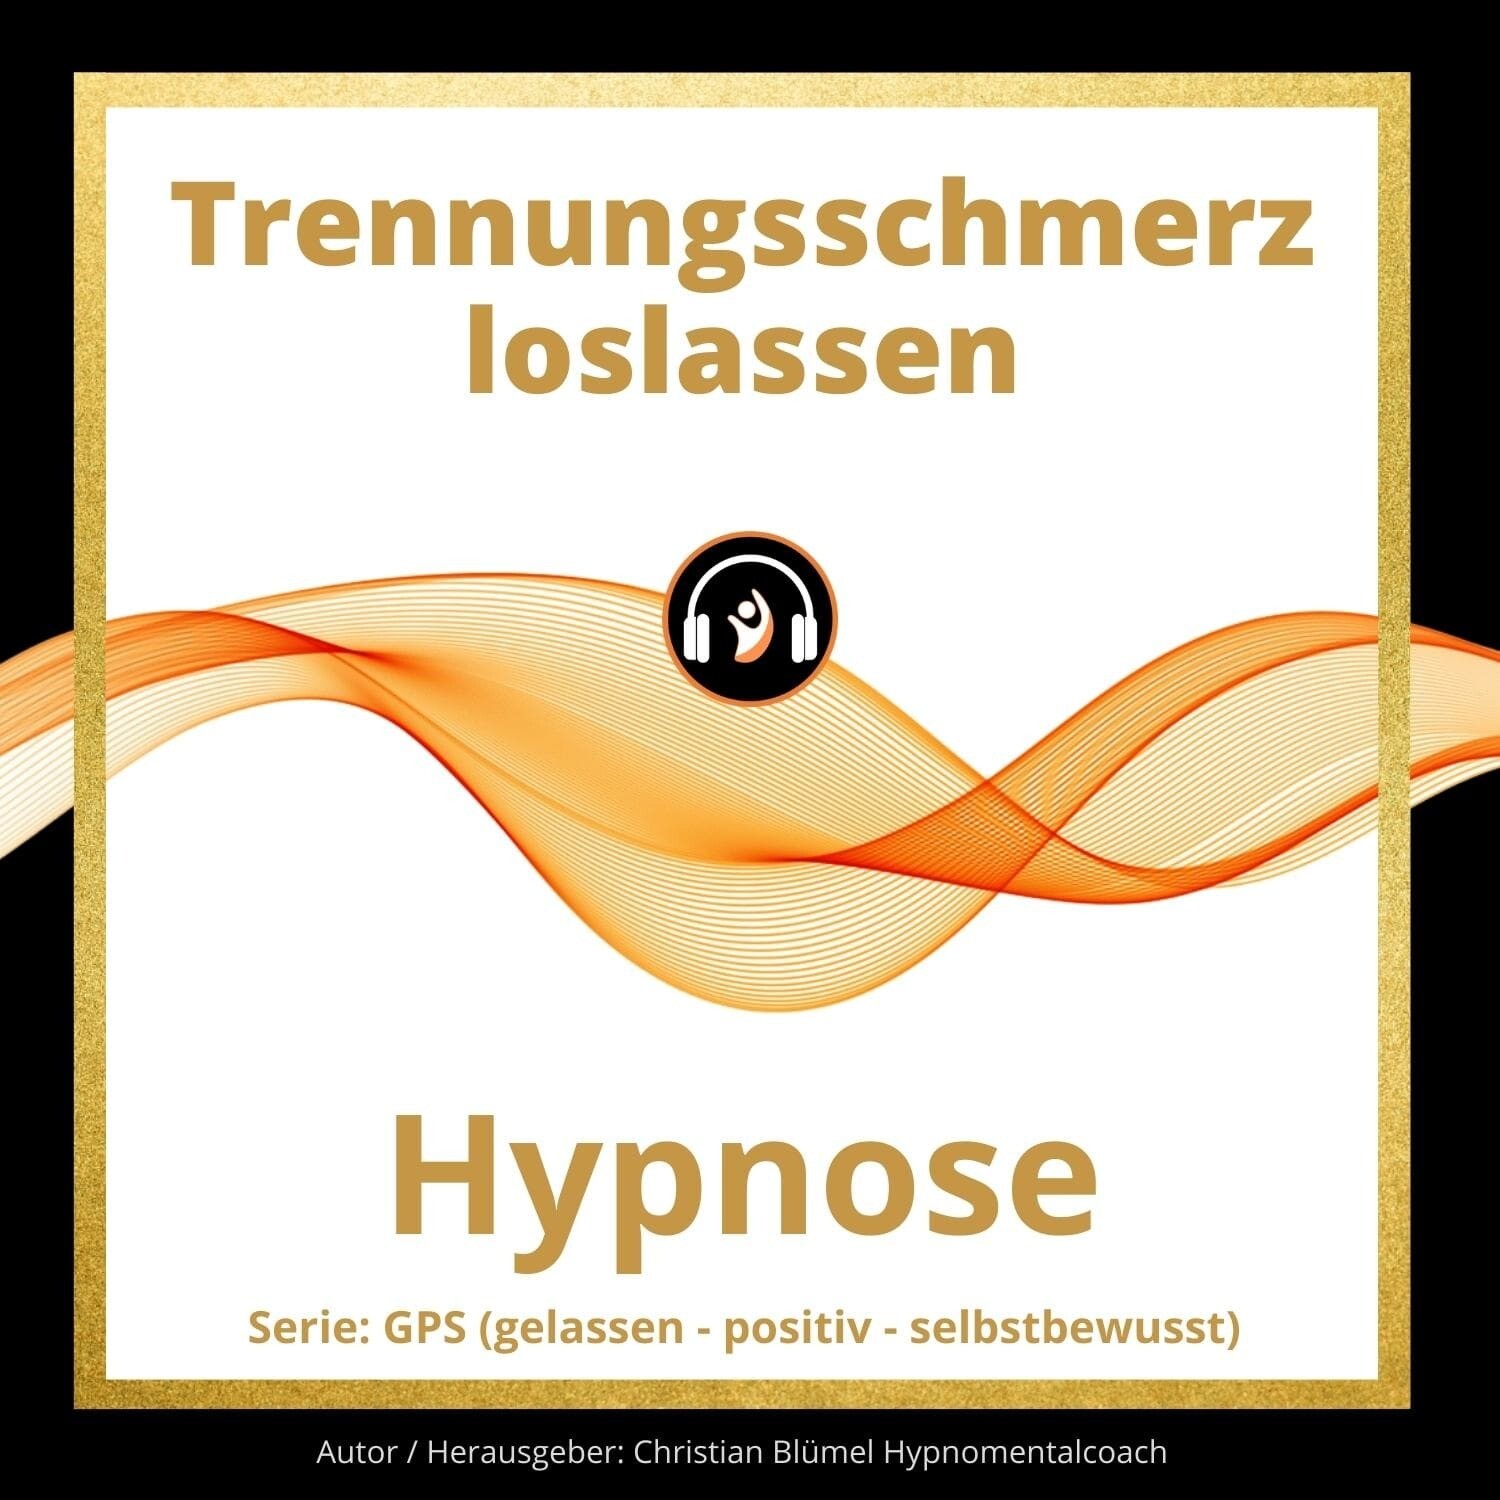 Audio Hypnose: Trennungsschmerz loslassen
GPS – gelassen-positiv-selbstbewusst